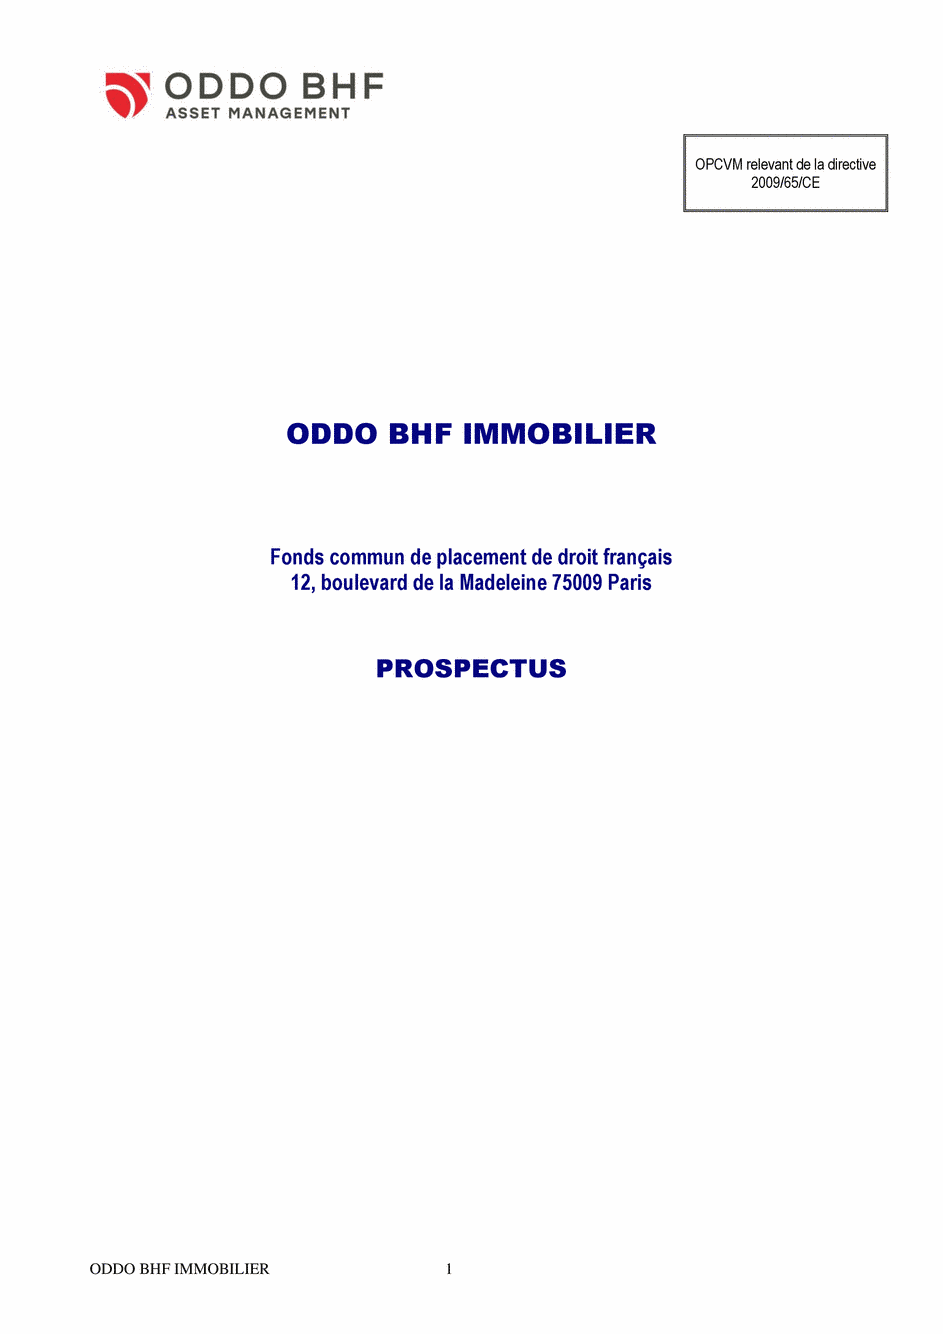 Prospectus ODDO BHF IMMOBILIER CN-EUR - 31/12/2020 - Français